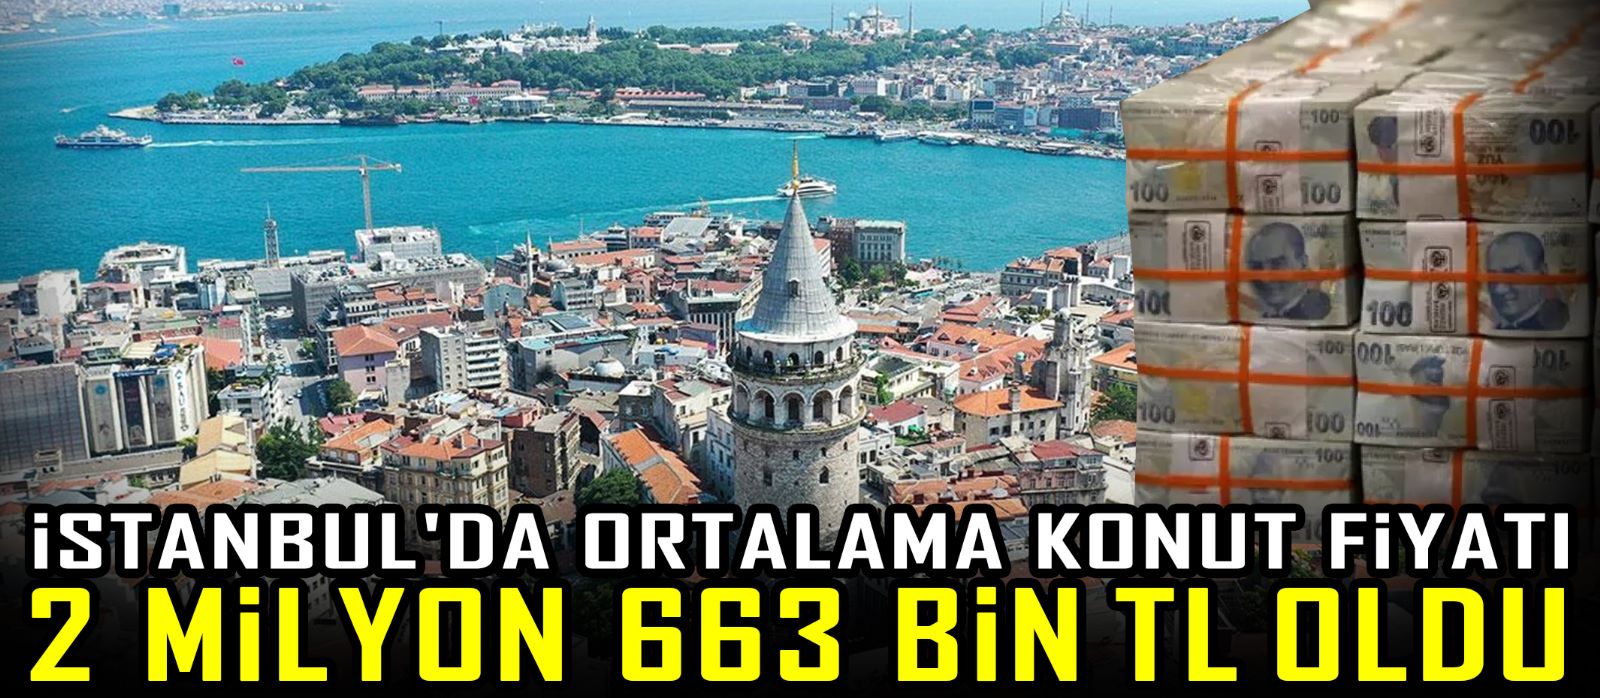 İstanbul'da ortalama konut fiyatı 2 milyon 663 Bin TL oldu